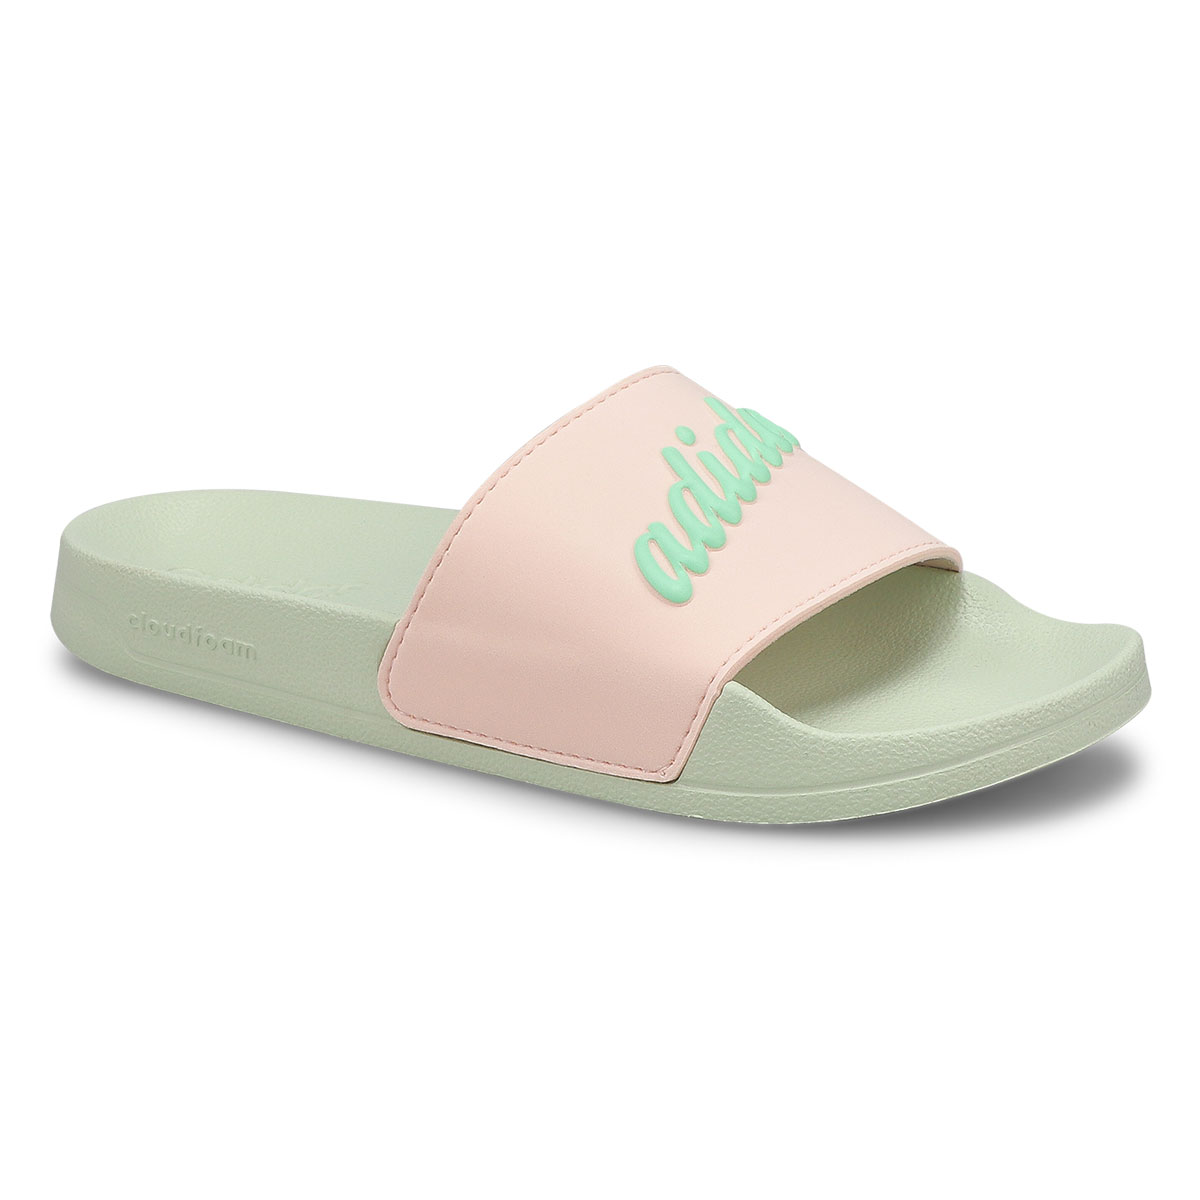 adidas Women's Adilette Shower Slide Sandal - | SoftMoc.com